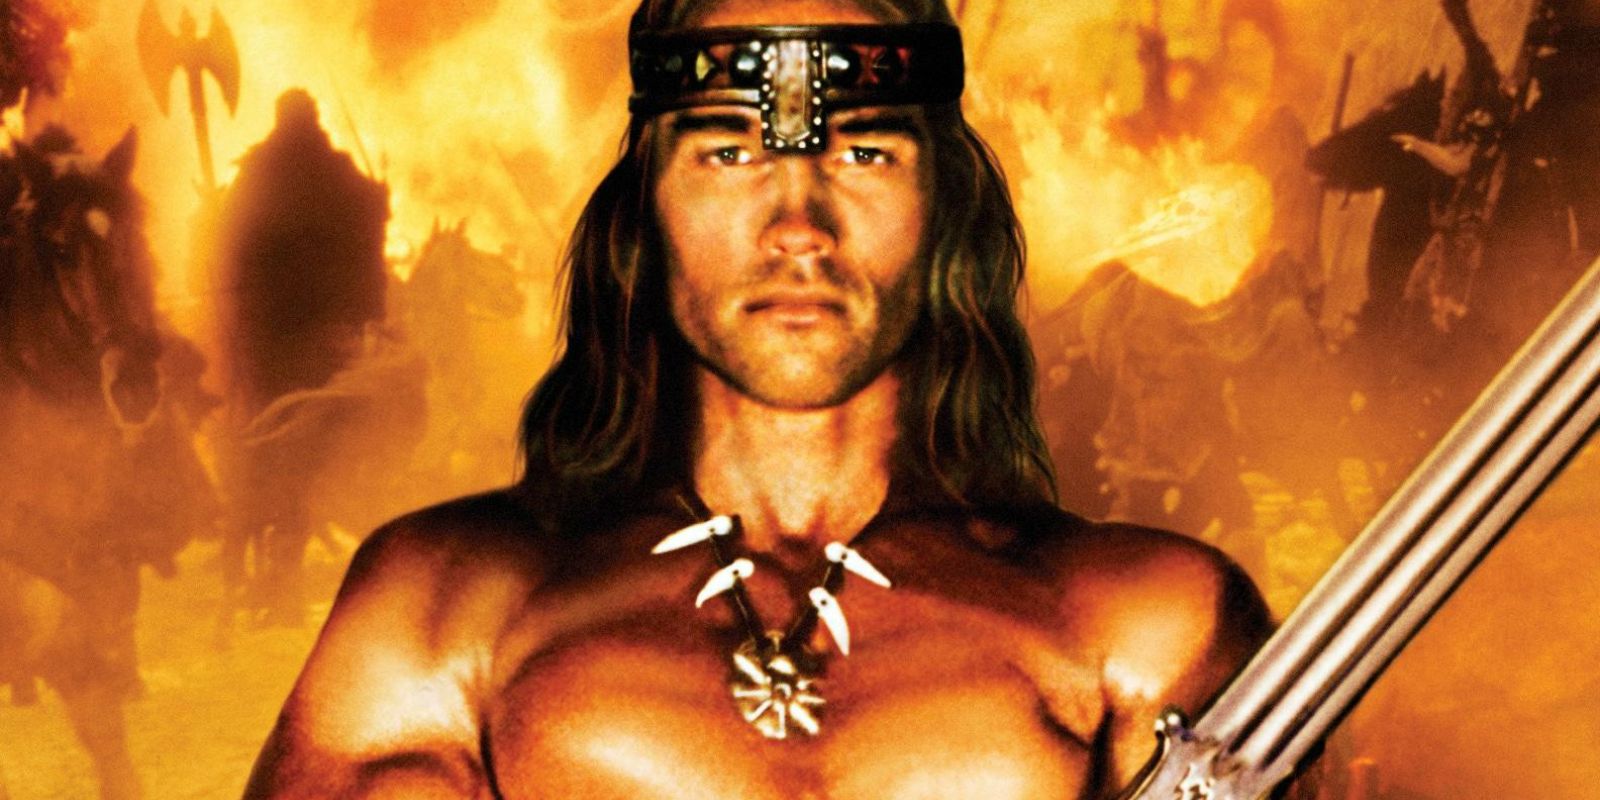 Legend of Conan with Schwarzenegger update